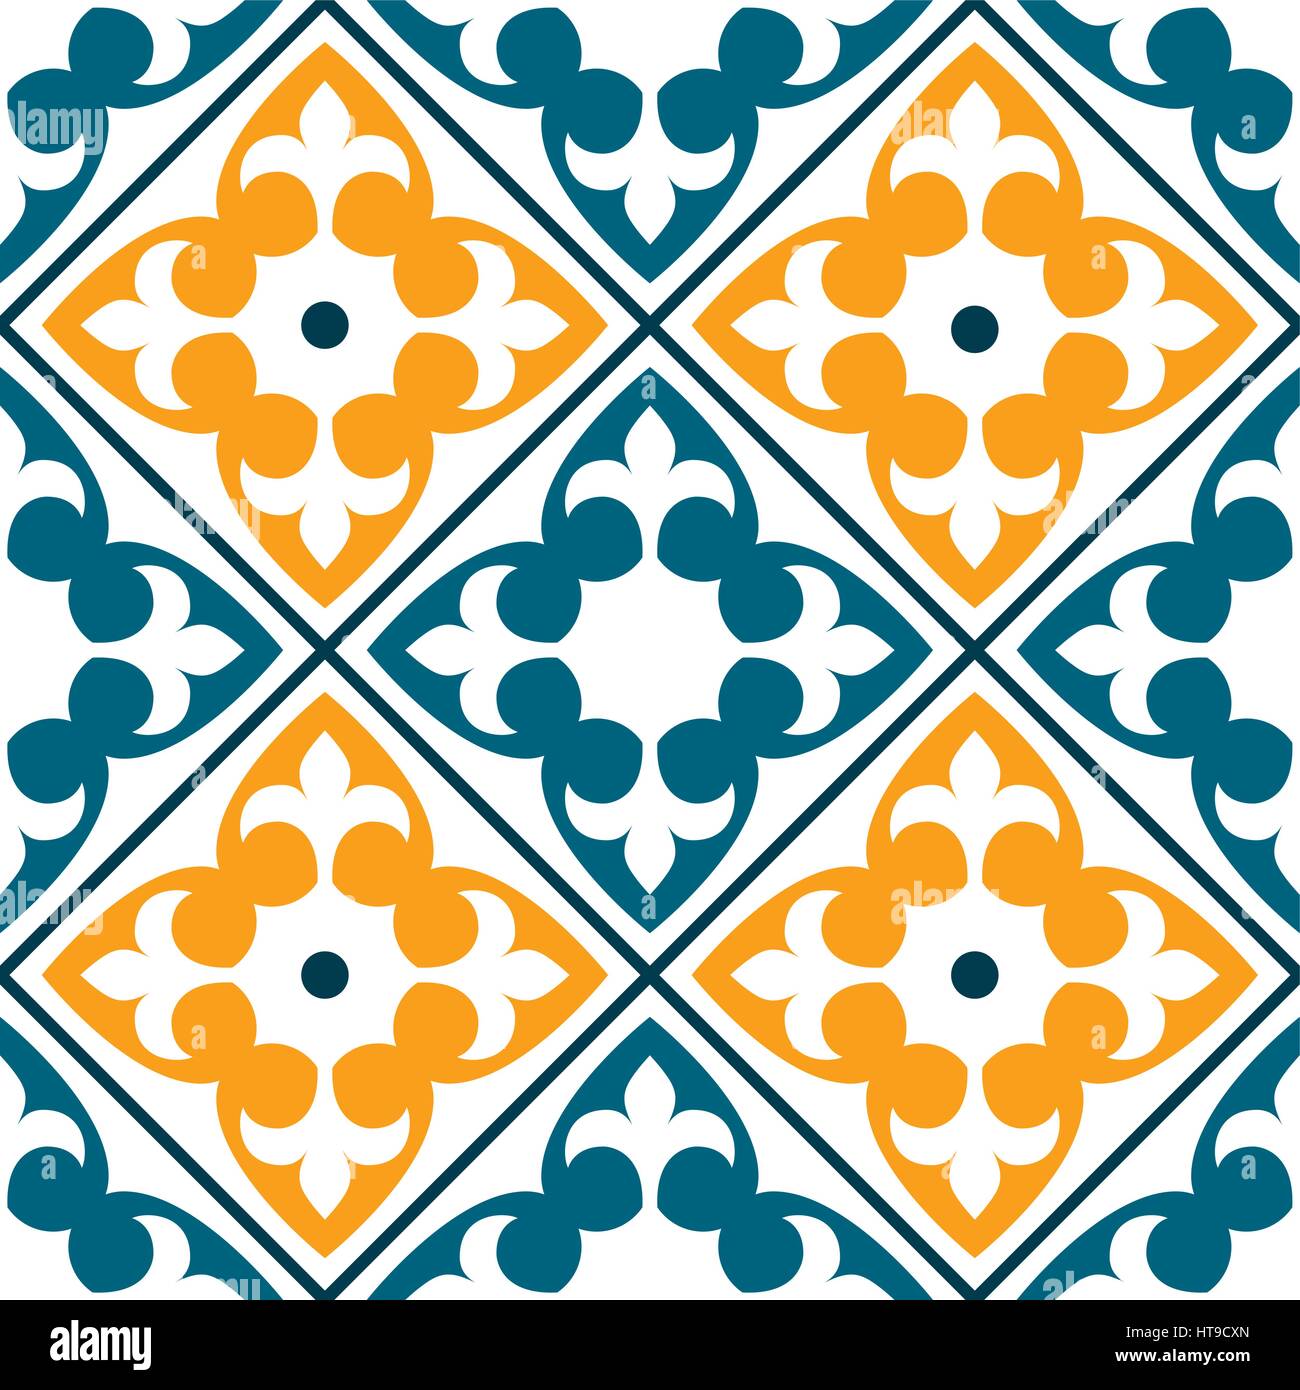 Piastrelle spagnolo pattern, portoghese o piastrelle marocchine, design seamless in verde scuro e arancio - Azulejo Illustrazione Vettoriale